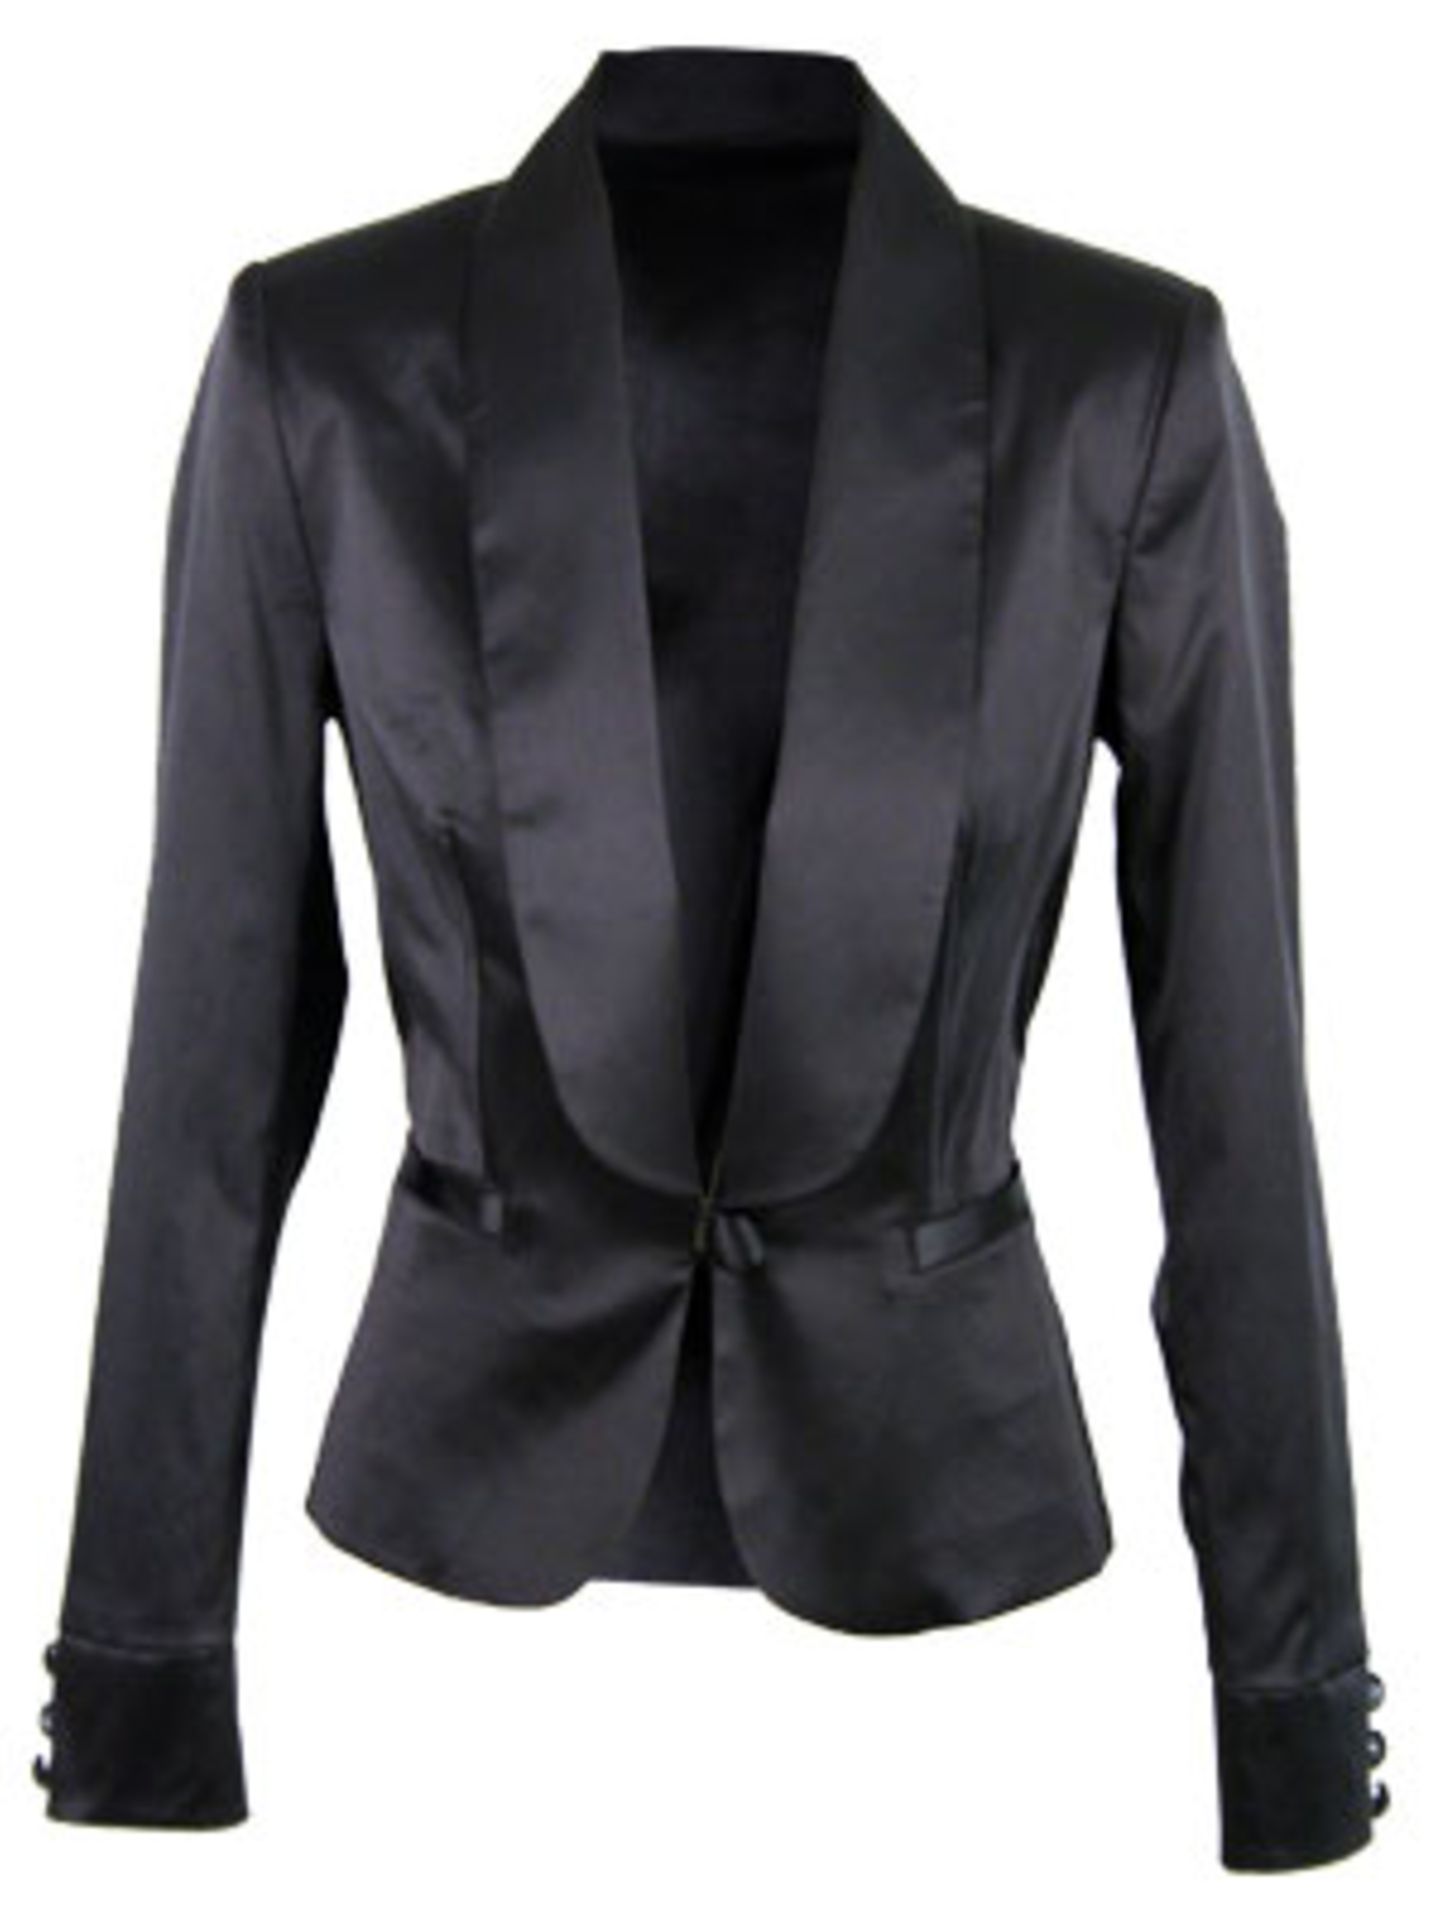 Taillierter Blazer mit Schalkragen aus glänzendem Material von Zara, um 50 Euro.